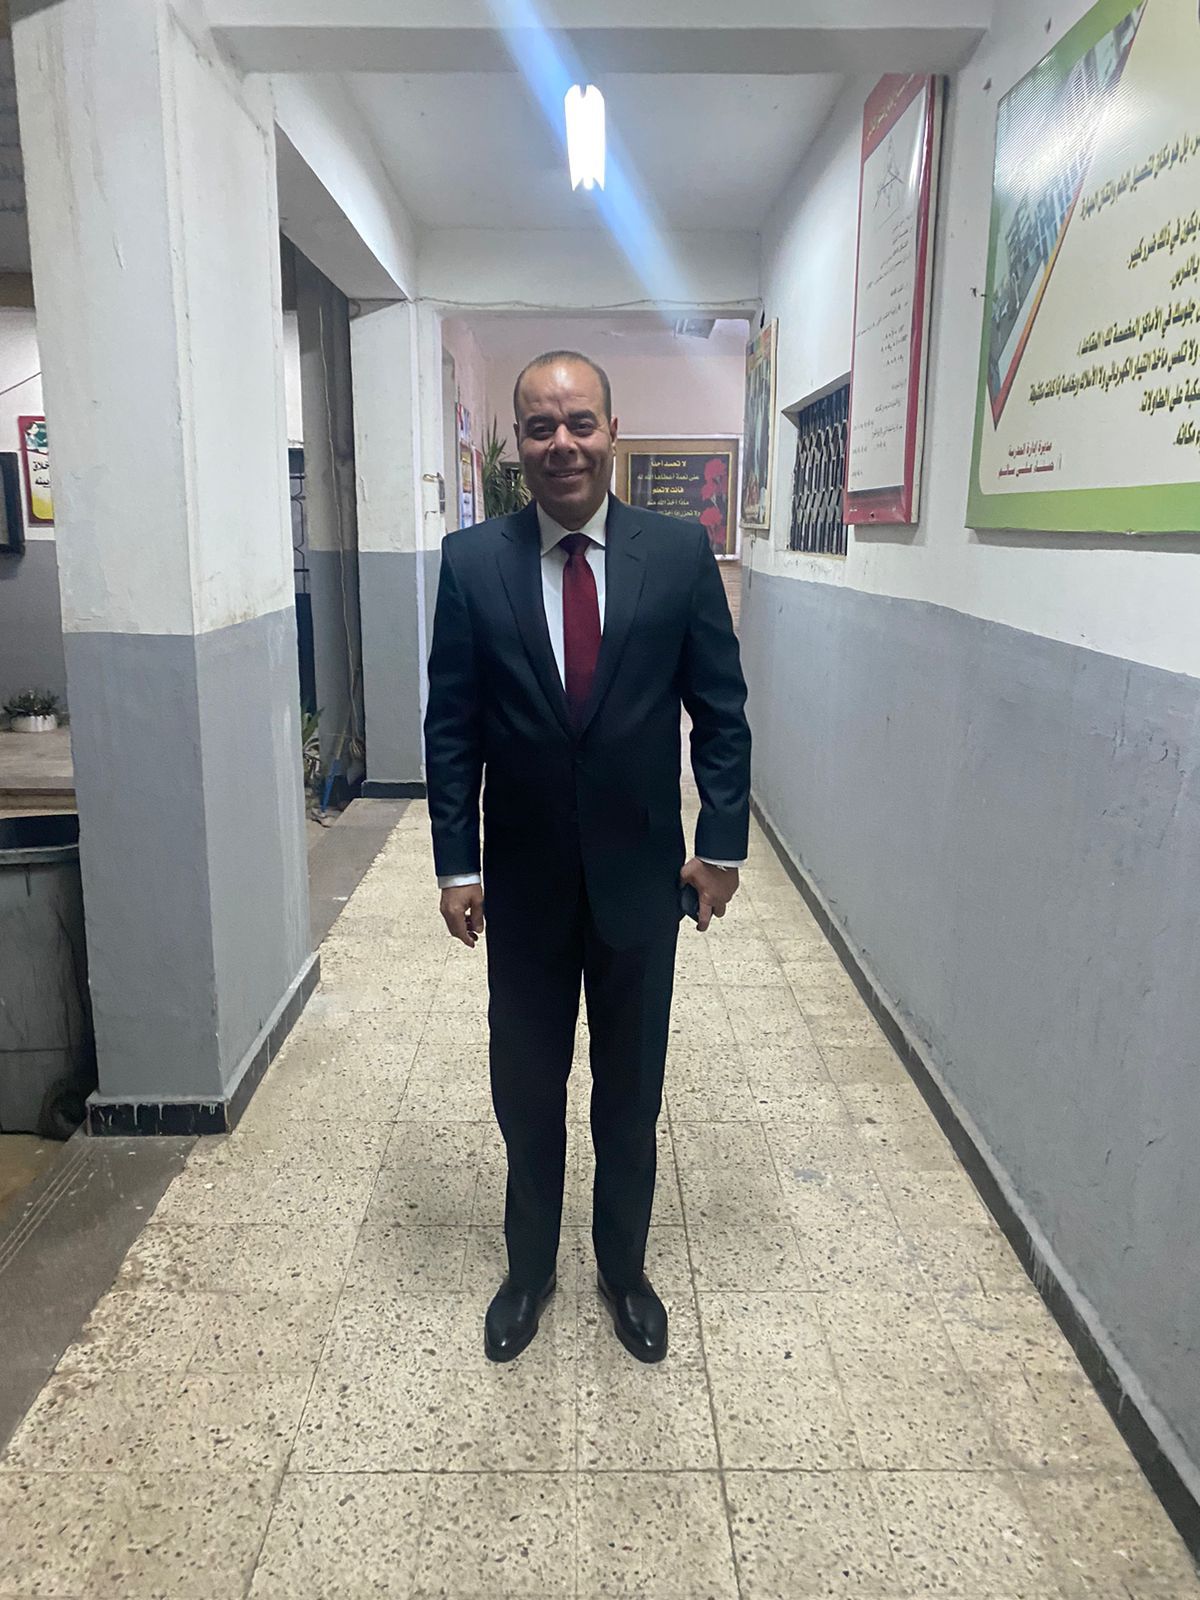 ياسر زيدان رئيس مجلس إدارة شركة القمزي- مصر للاستثمار والتطوير العقاري